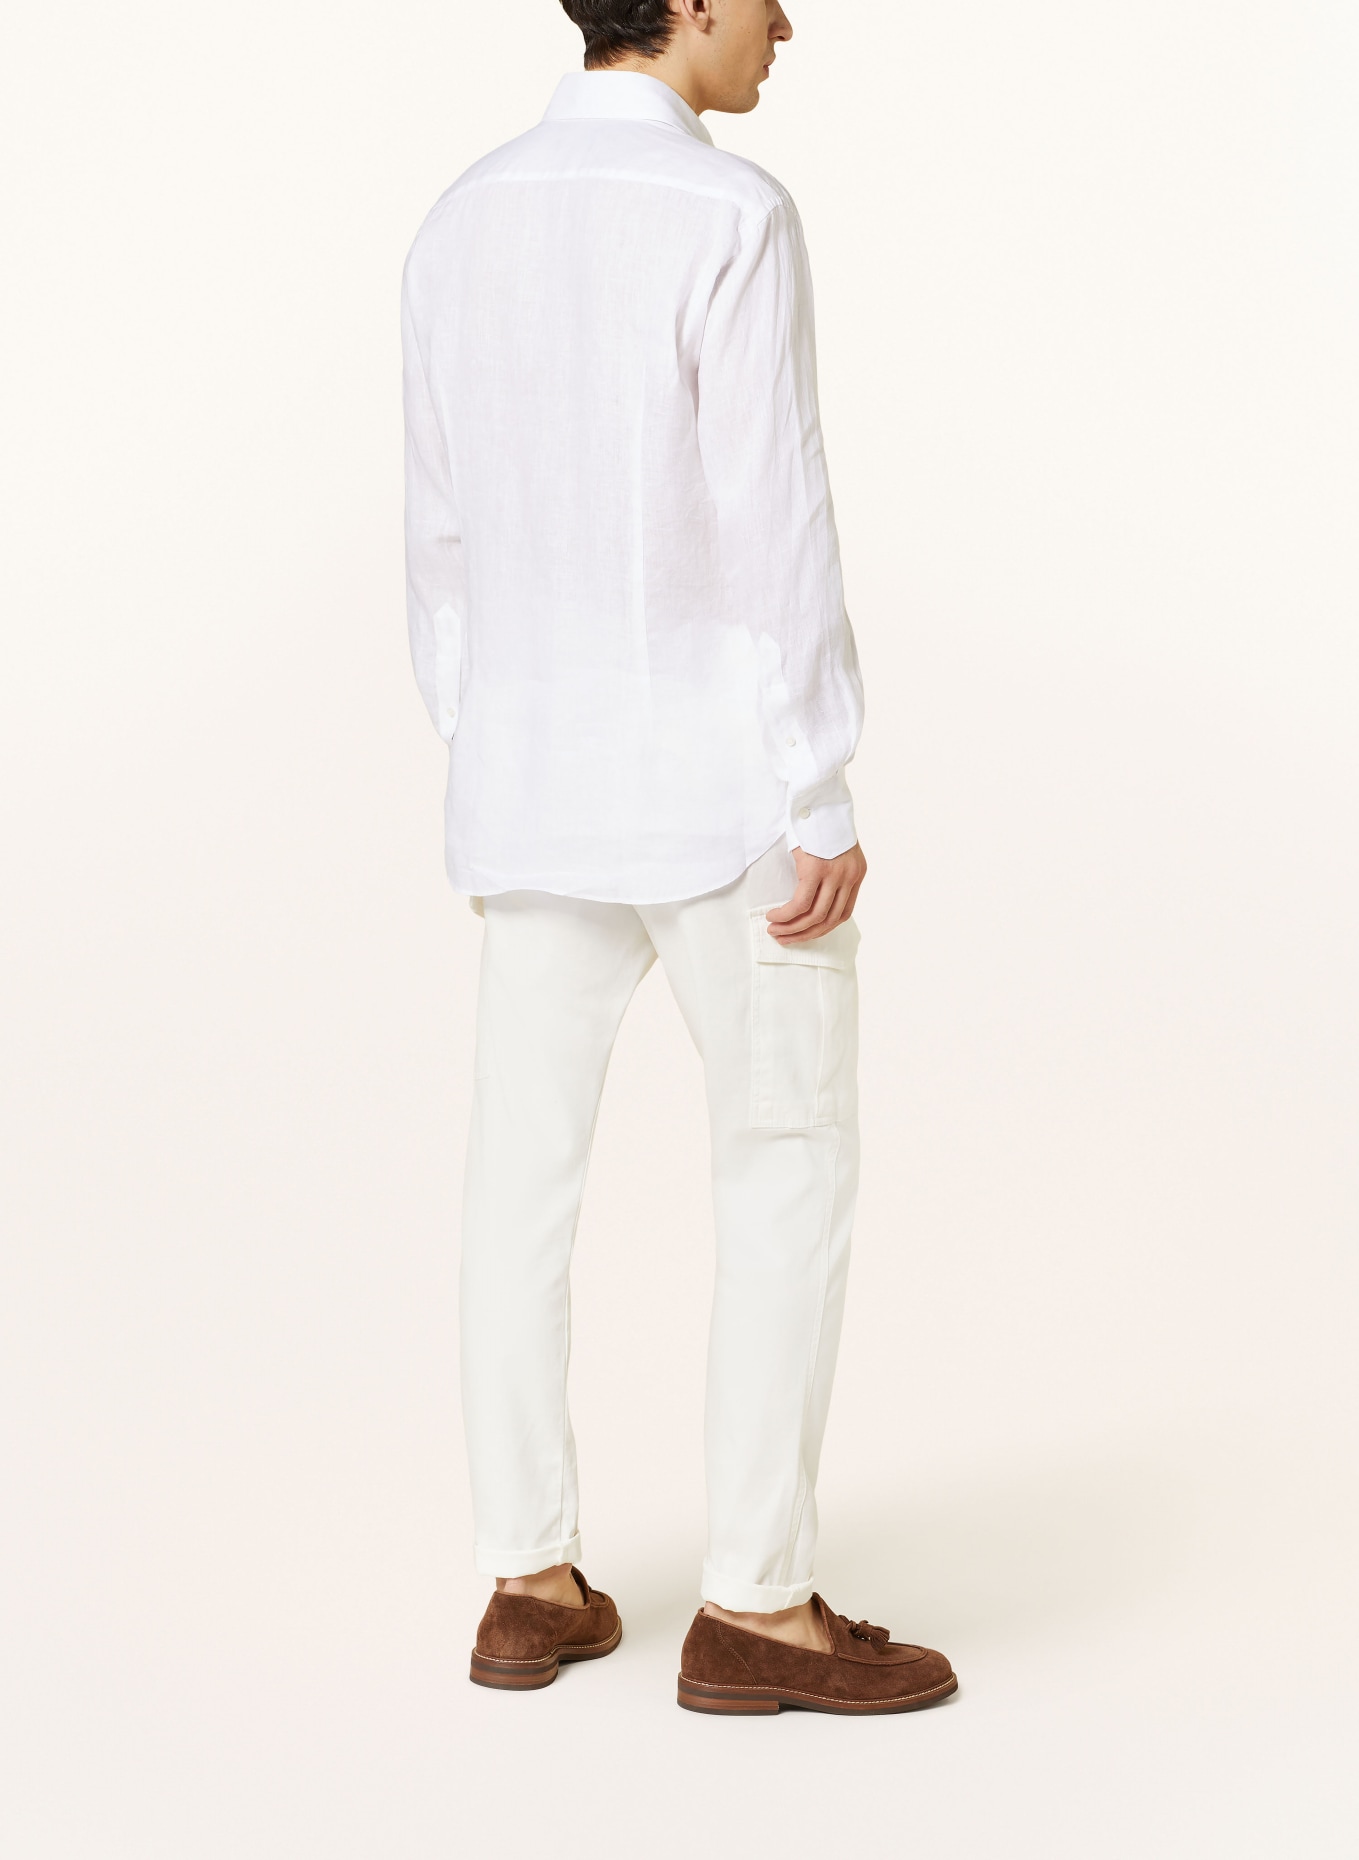 ARTIGIANO Leinenhemd Classic Fit, Farbe: 1 uni white (Bild 3)